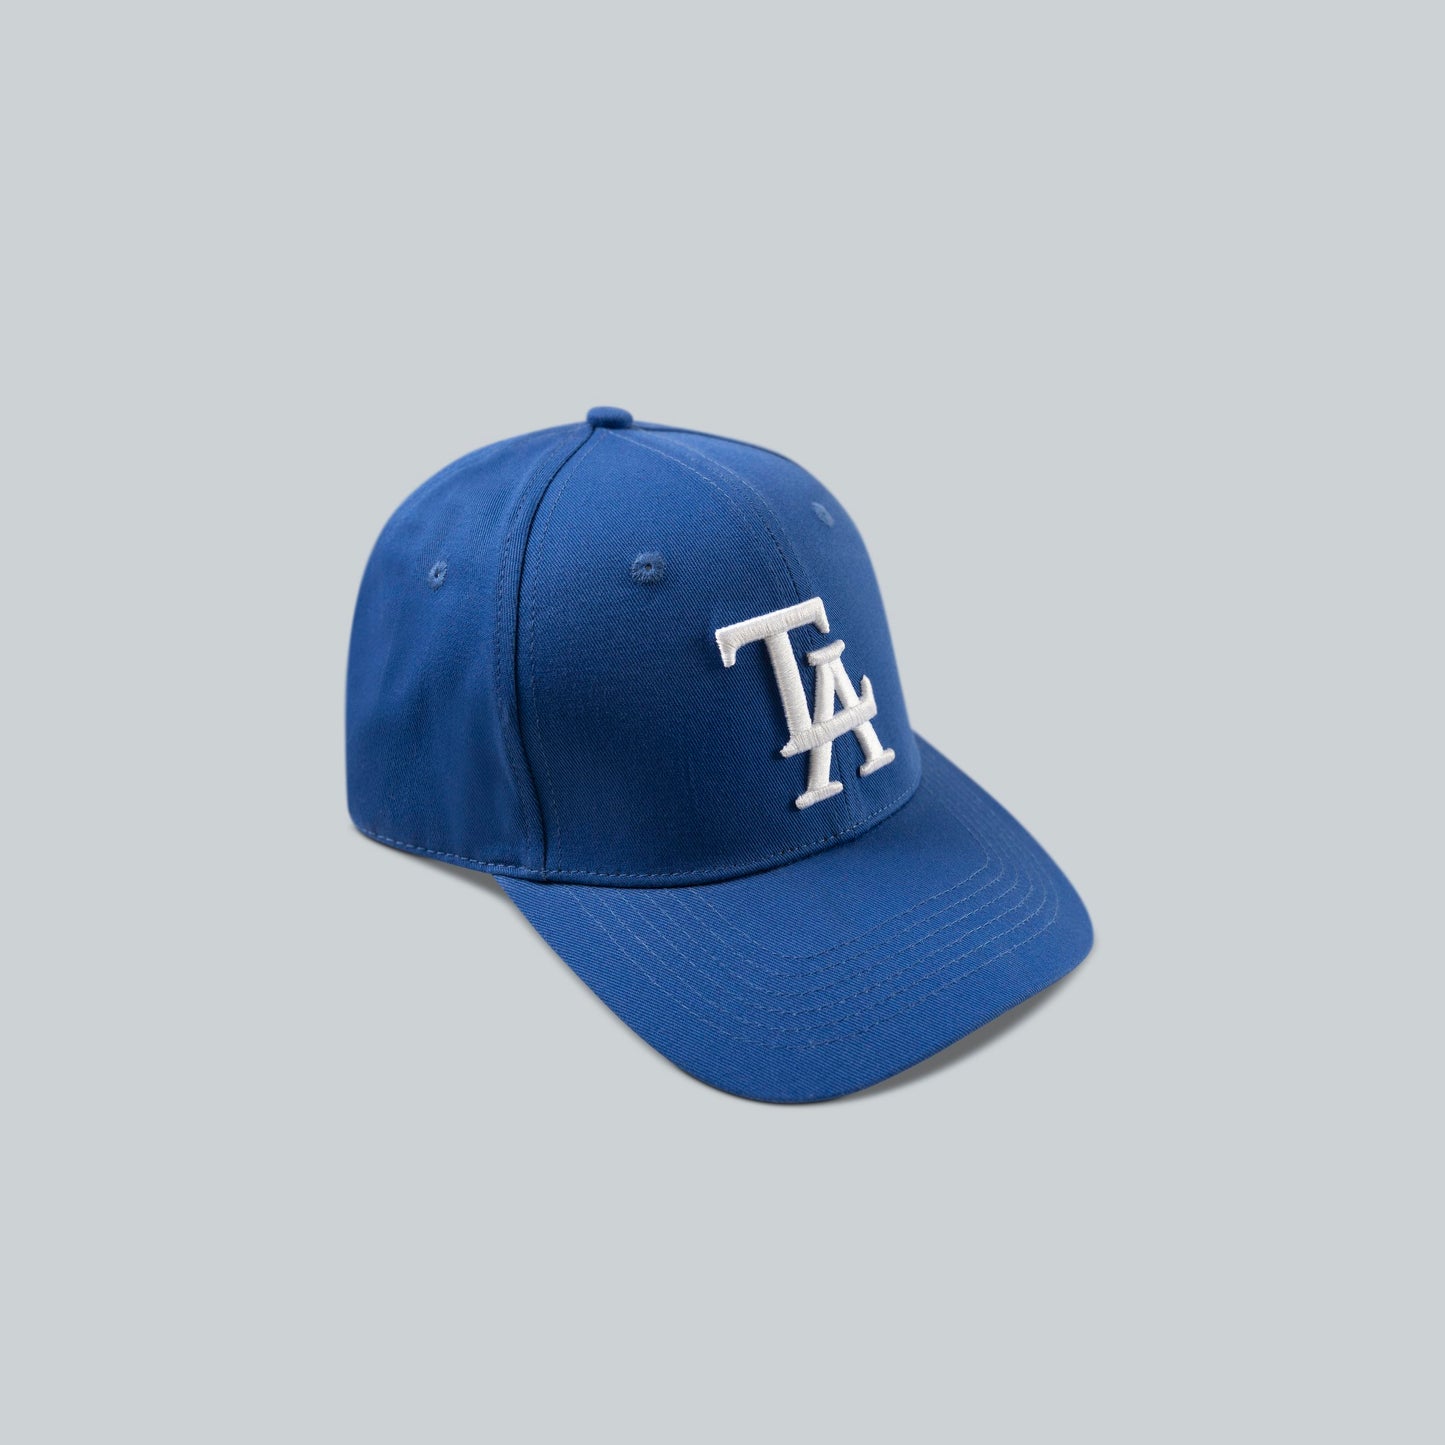 BLUE TLA CAP